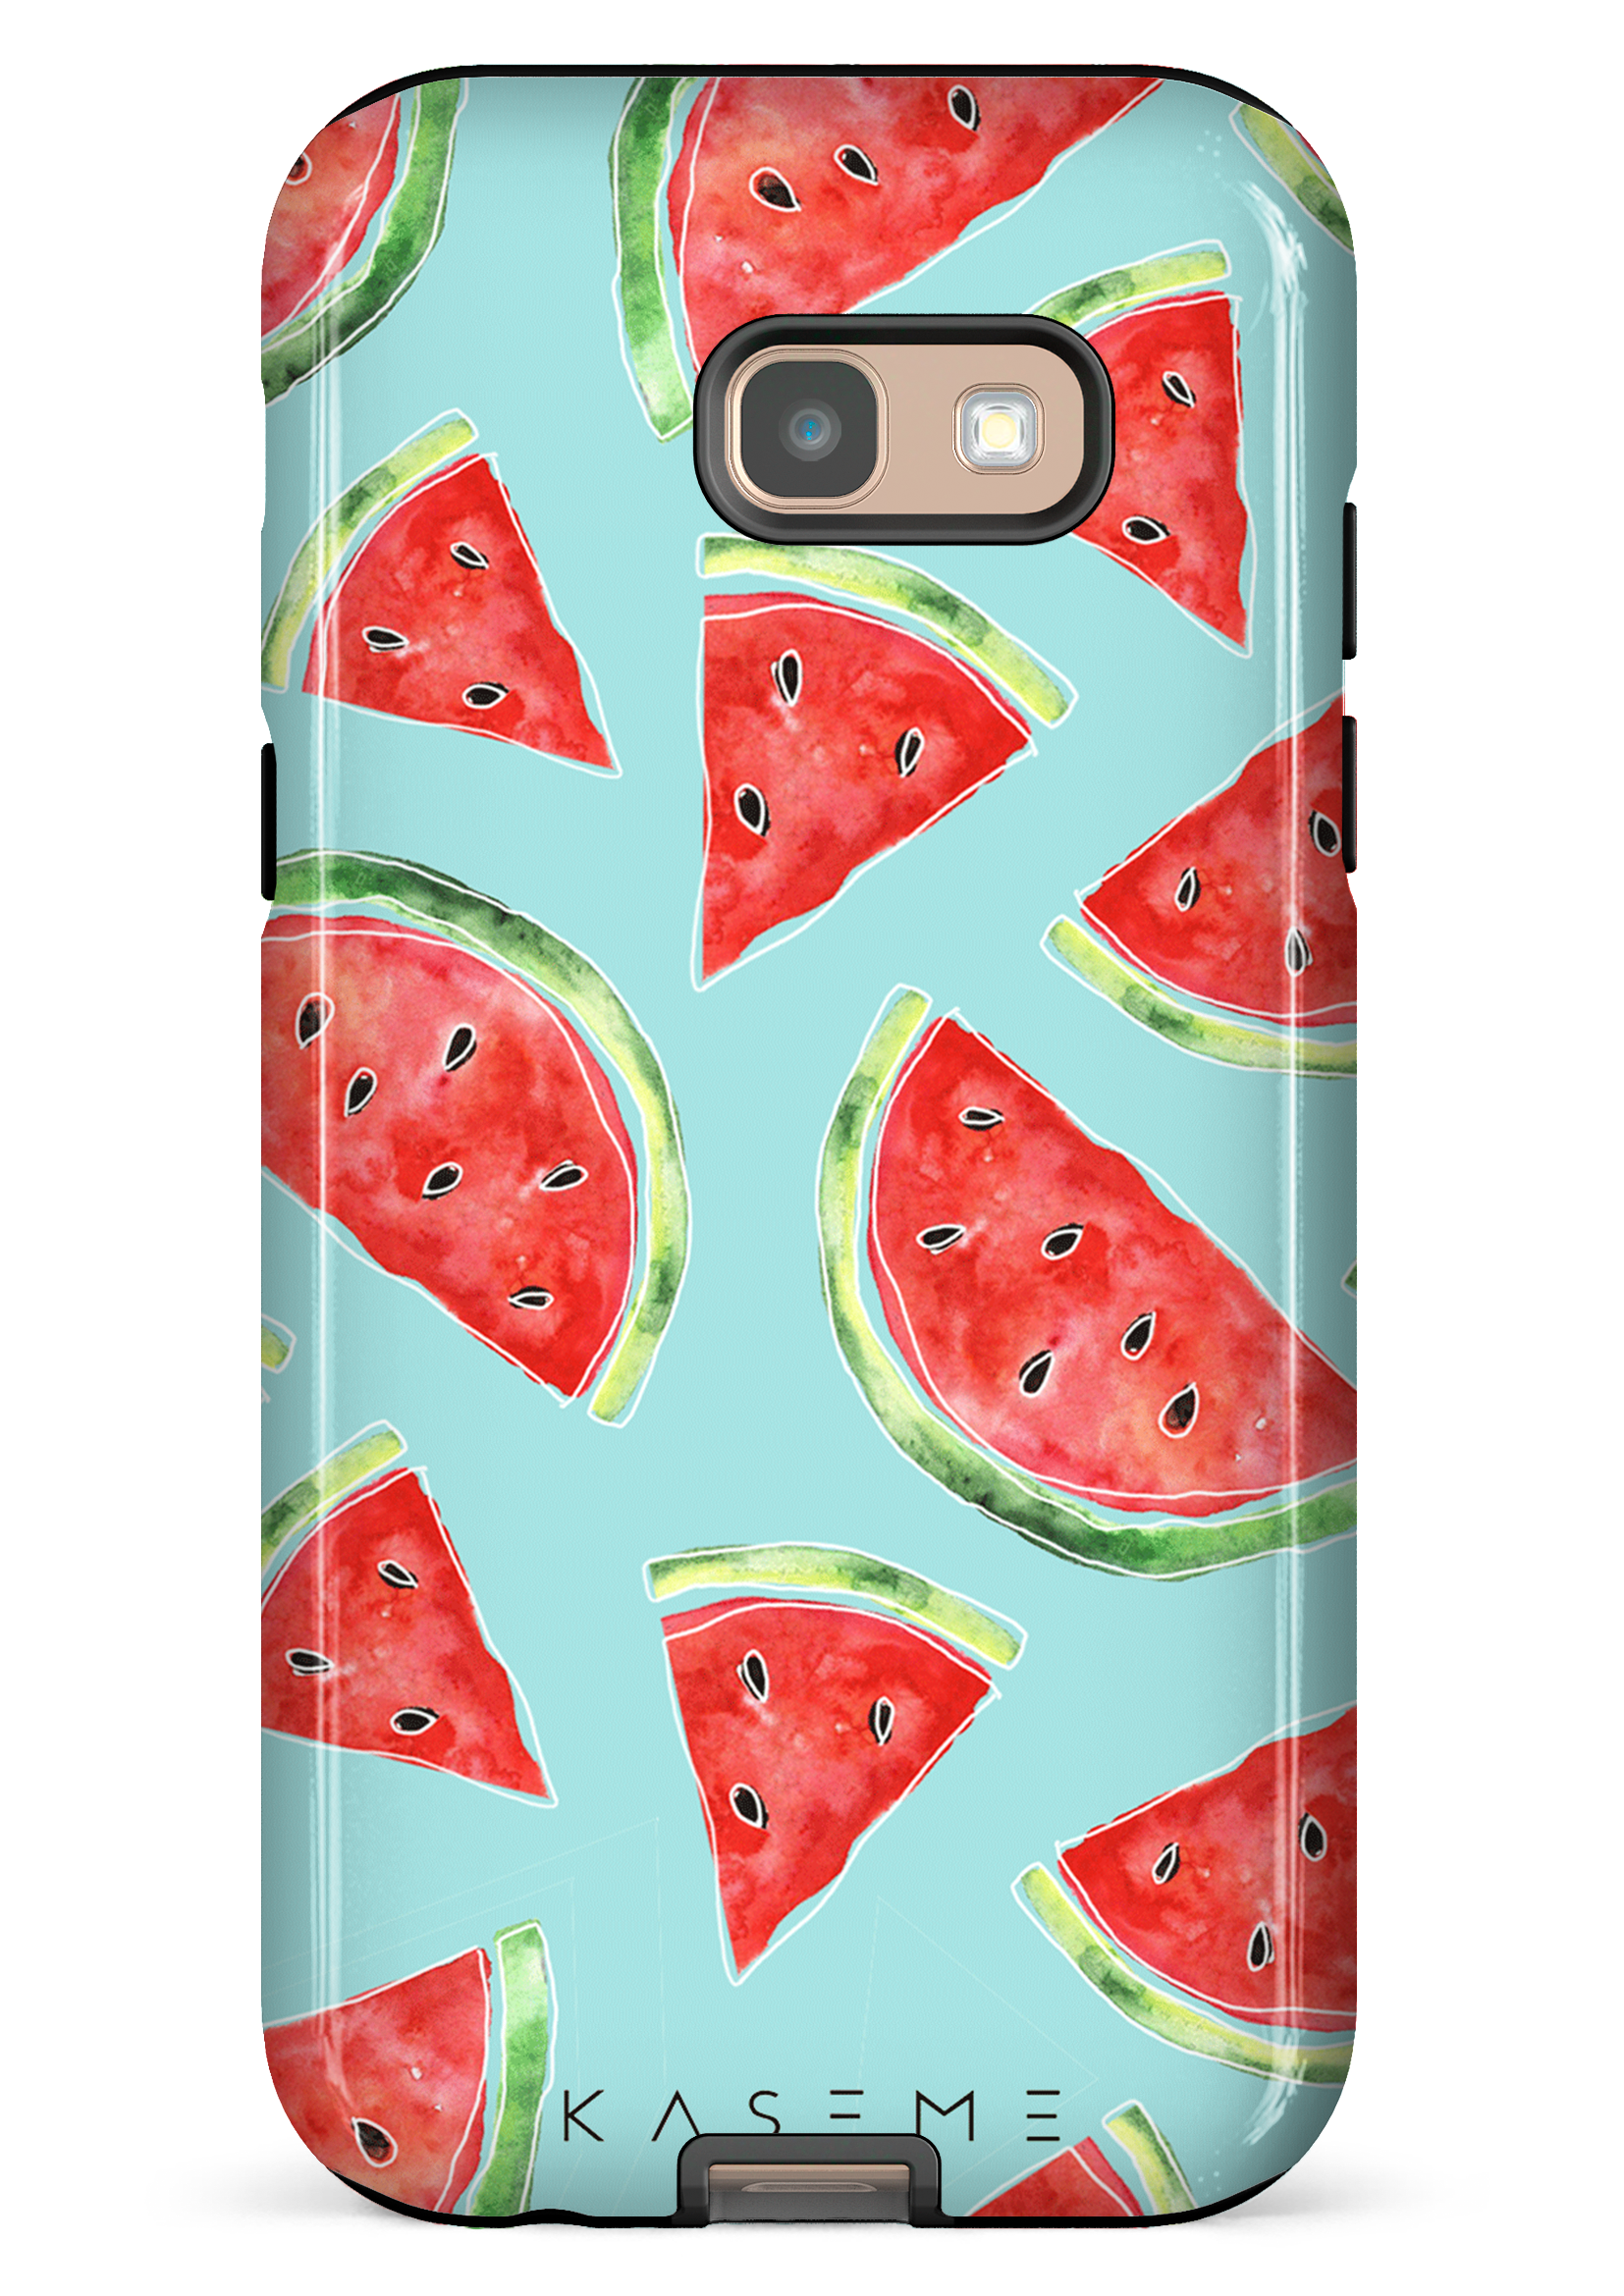 Wondermelon - Galaxy A5 (2017)